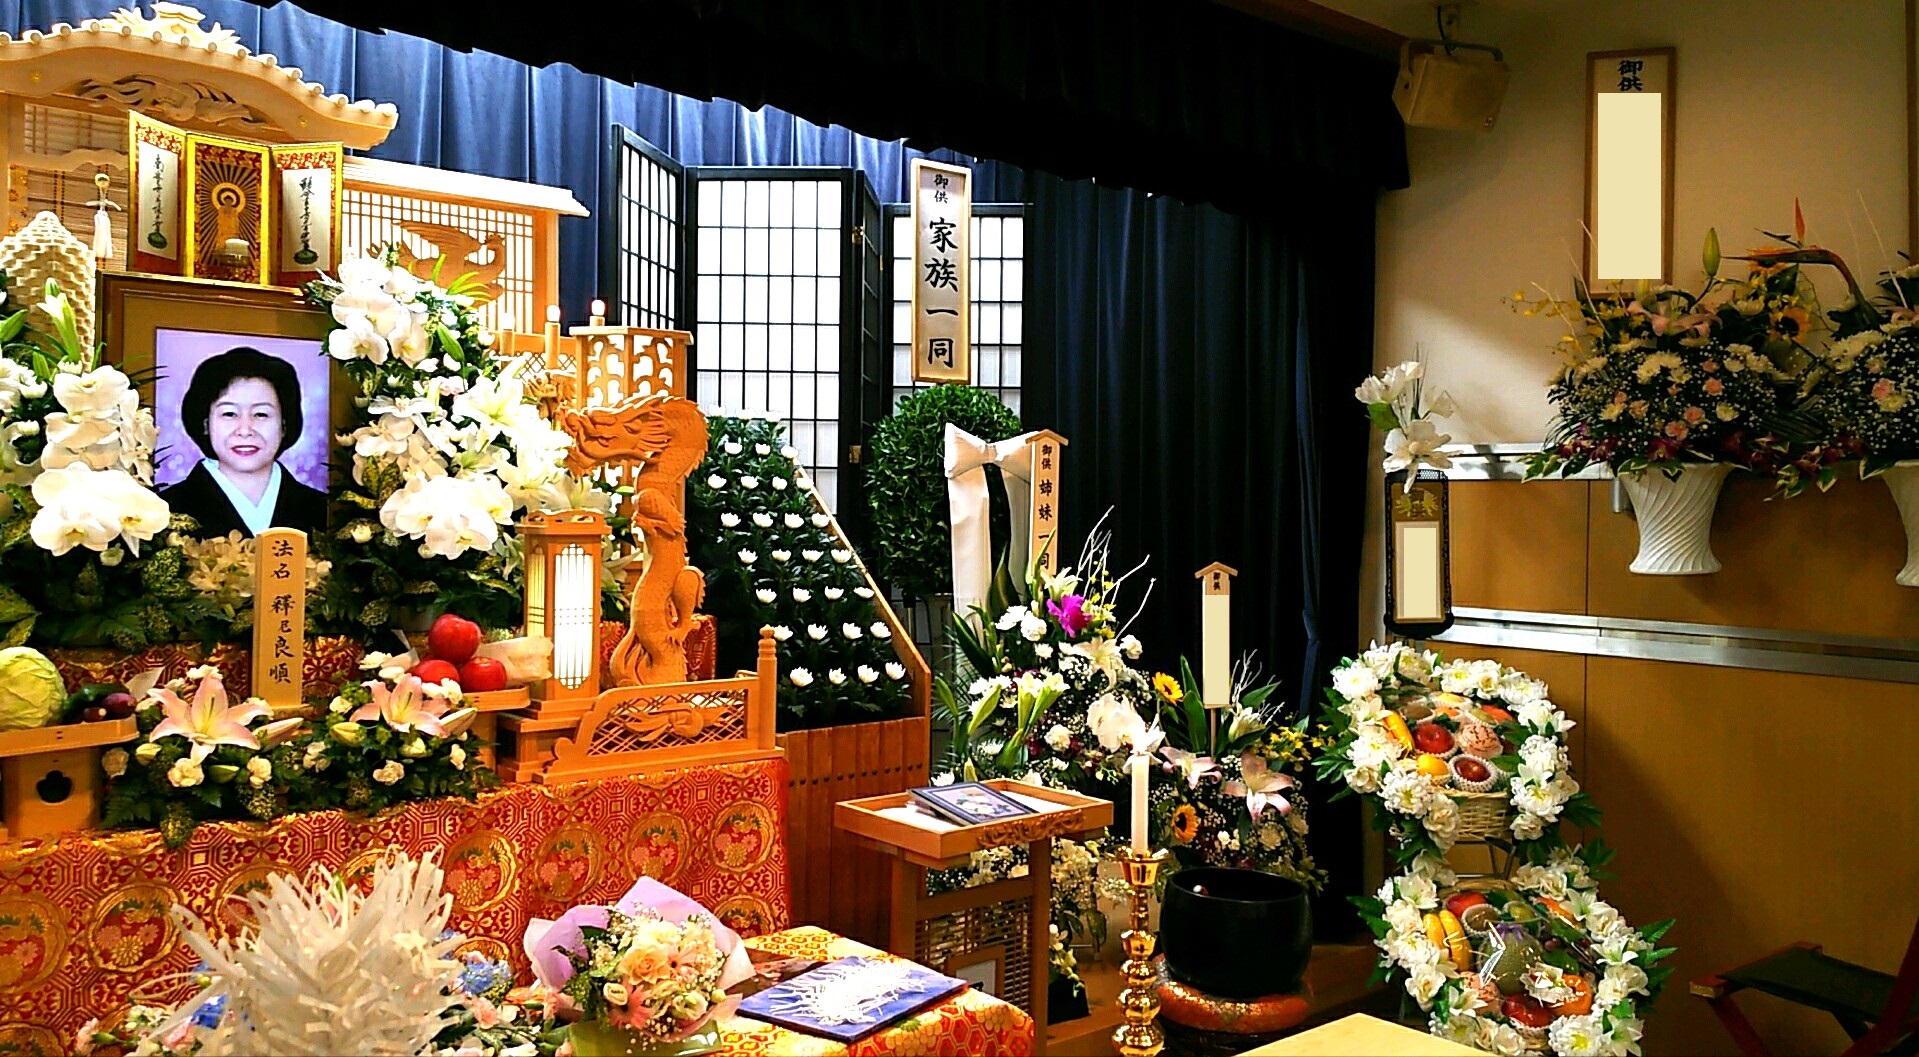 祭壇横にはたくさんの果物、お花のお供え物が飾られました。